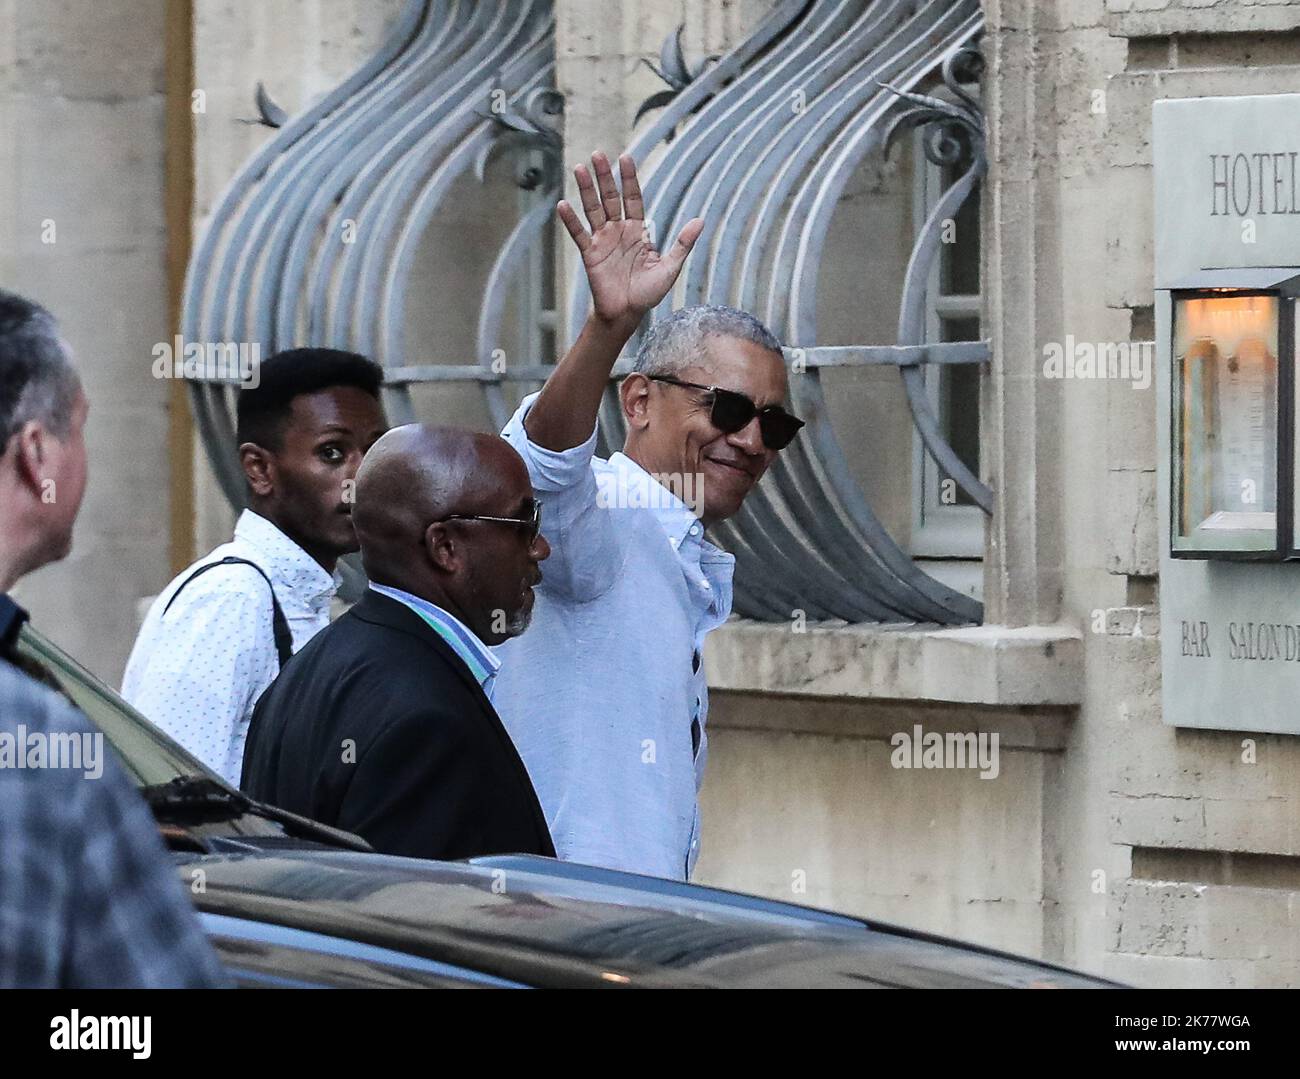 L'ancien président américain Barack Obama et sa famille sont en vacances dans le sud de la France. Leur imposante caravane de voitures est proche du Palais des Papes à Avignon Banque D'Images